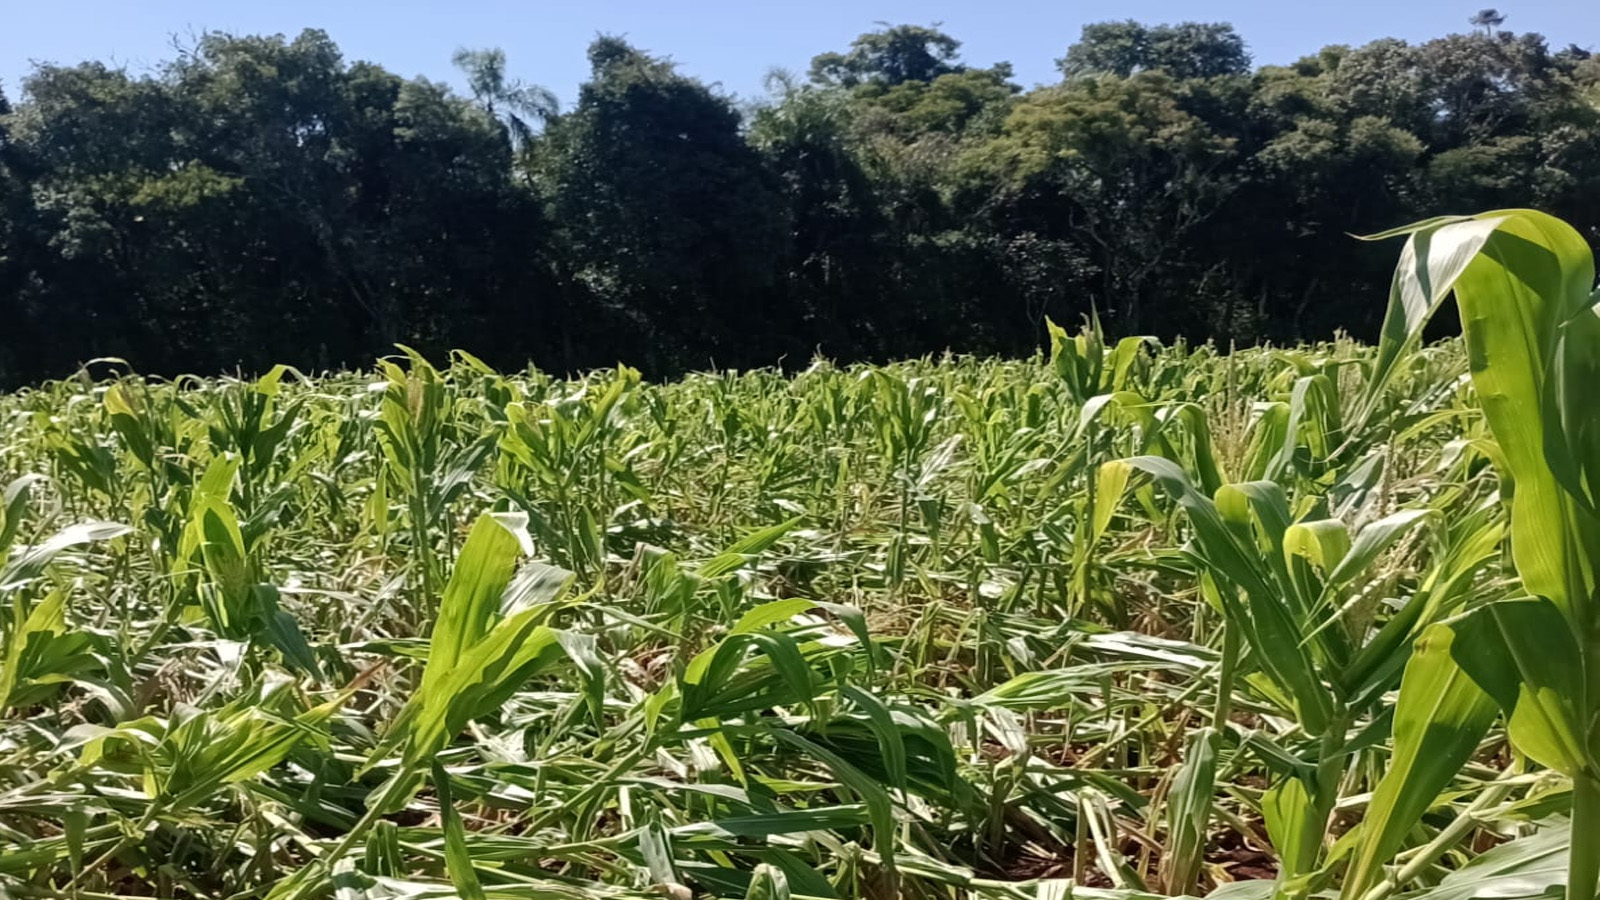 Fatores climáticos causam prejuízo a safrinha de milho na região